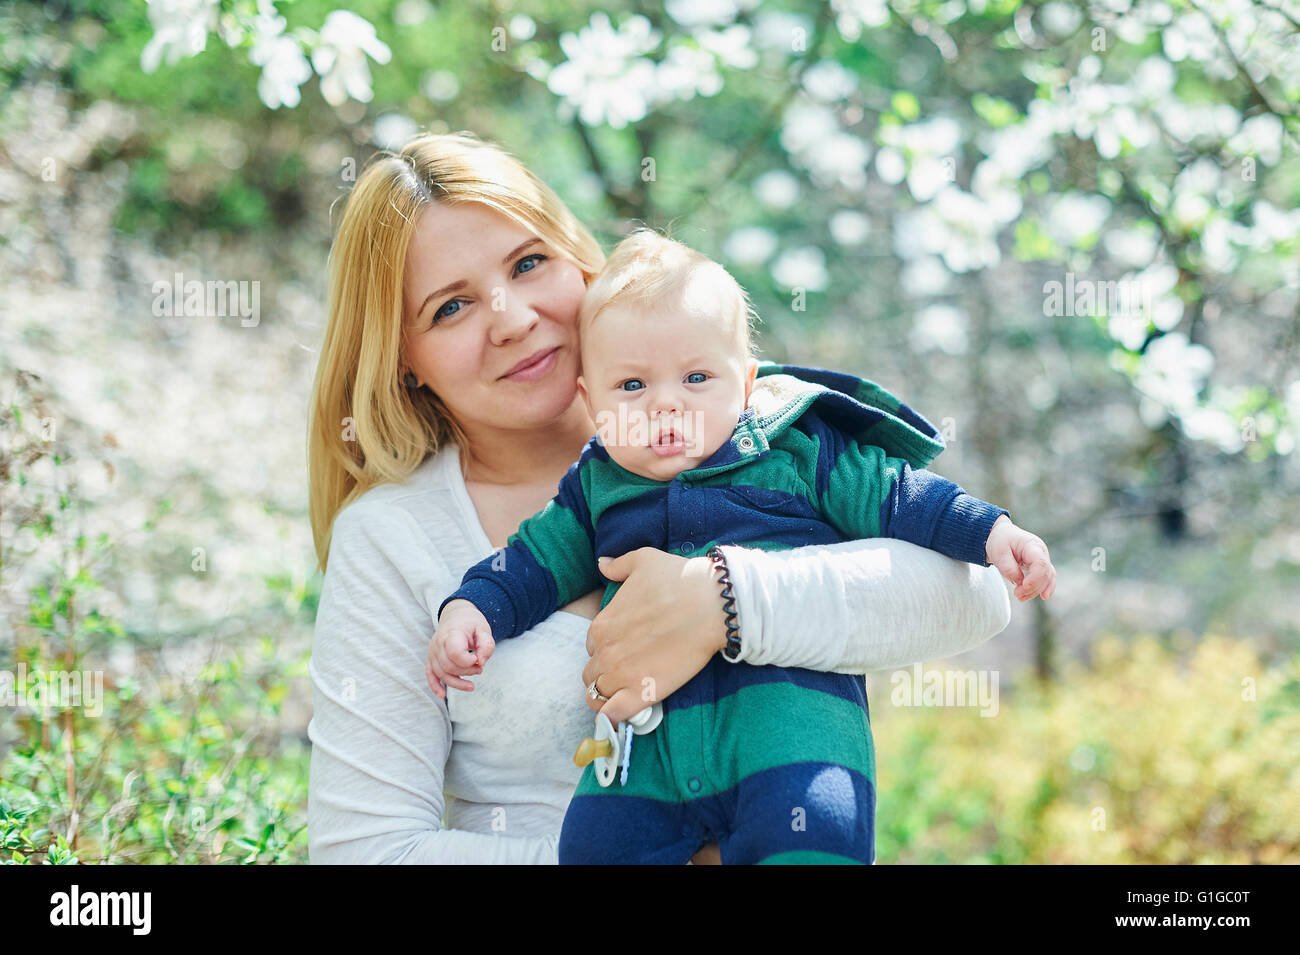 Mutter zu Fuß mit ihrem Baby Sohn im Garten des blühenden Magnolien Stockfoto